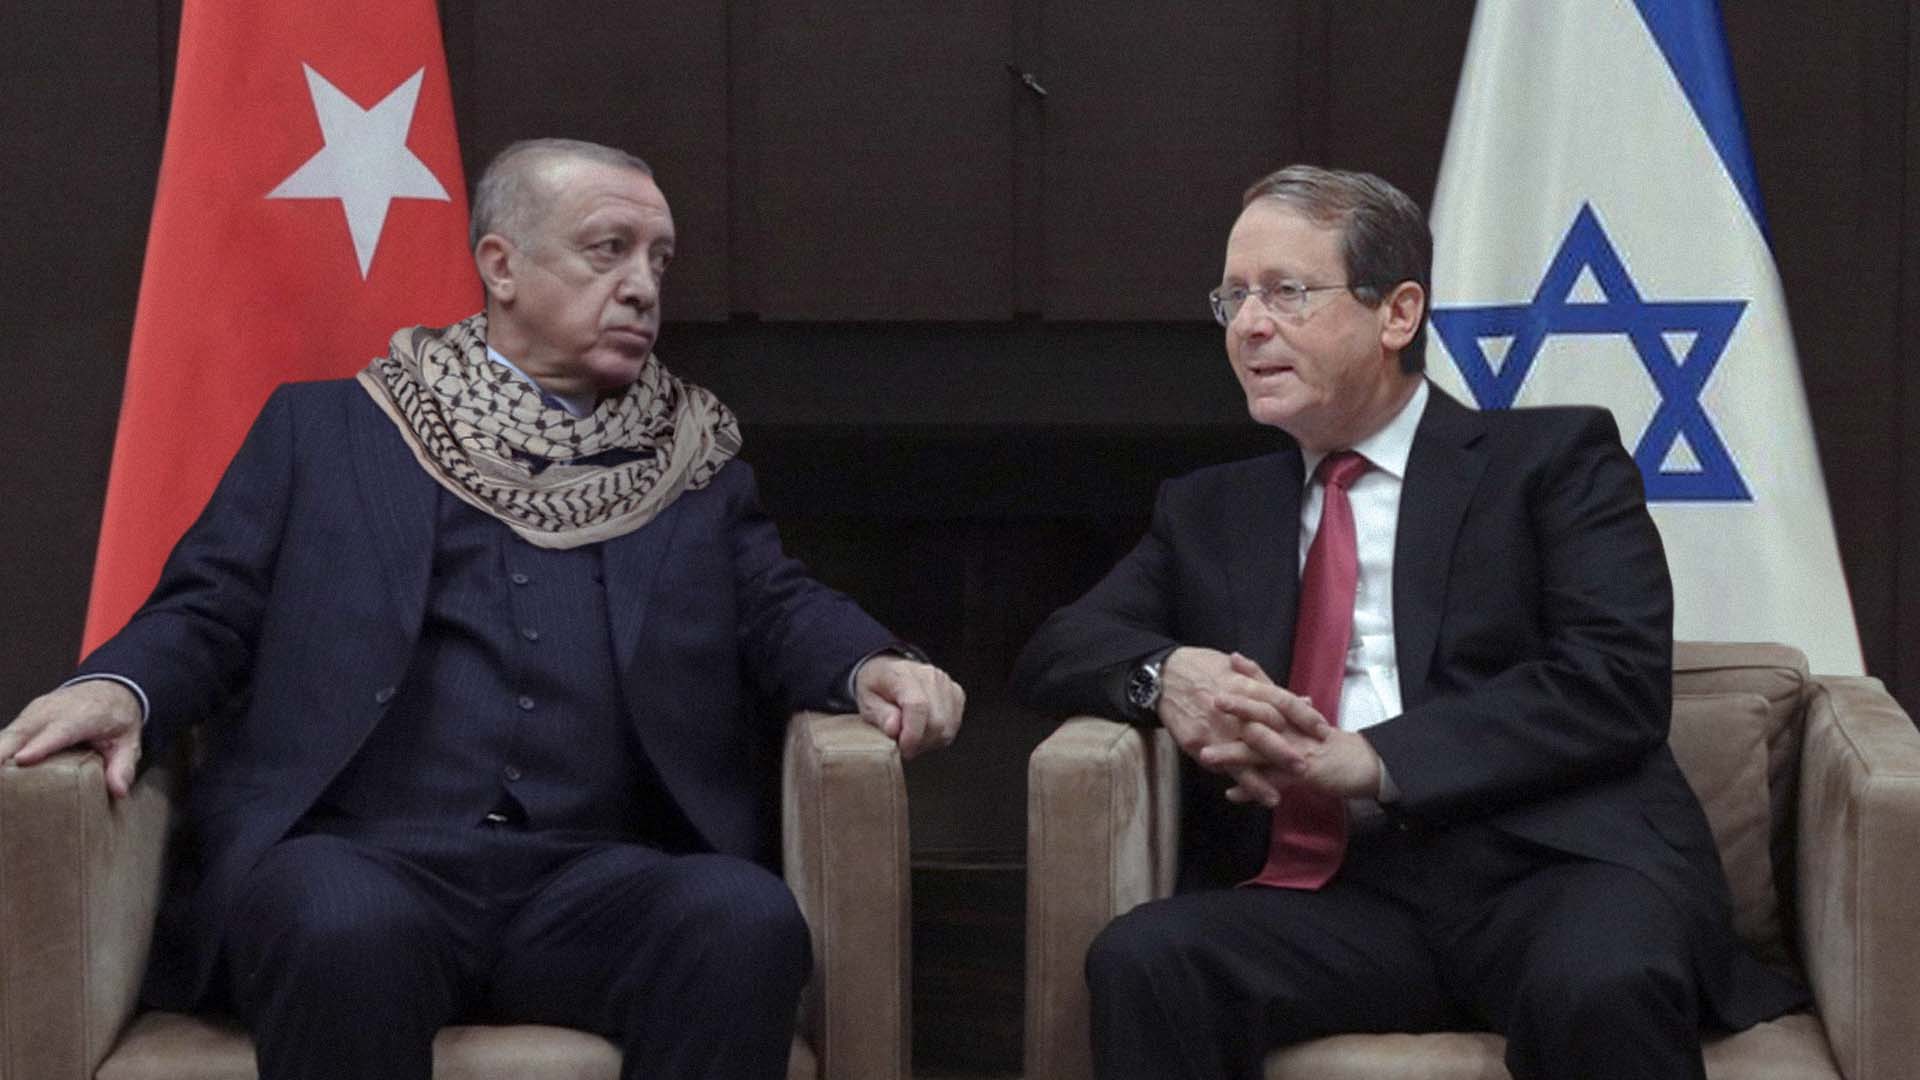 صورة احتماءً من البرد: إردوغان يتدثر بالكوفية الفلسطينية ويجلس في أحضان إسرائيل